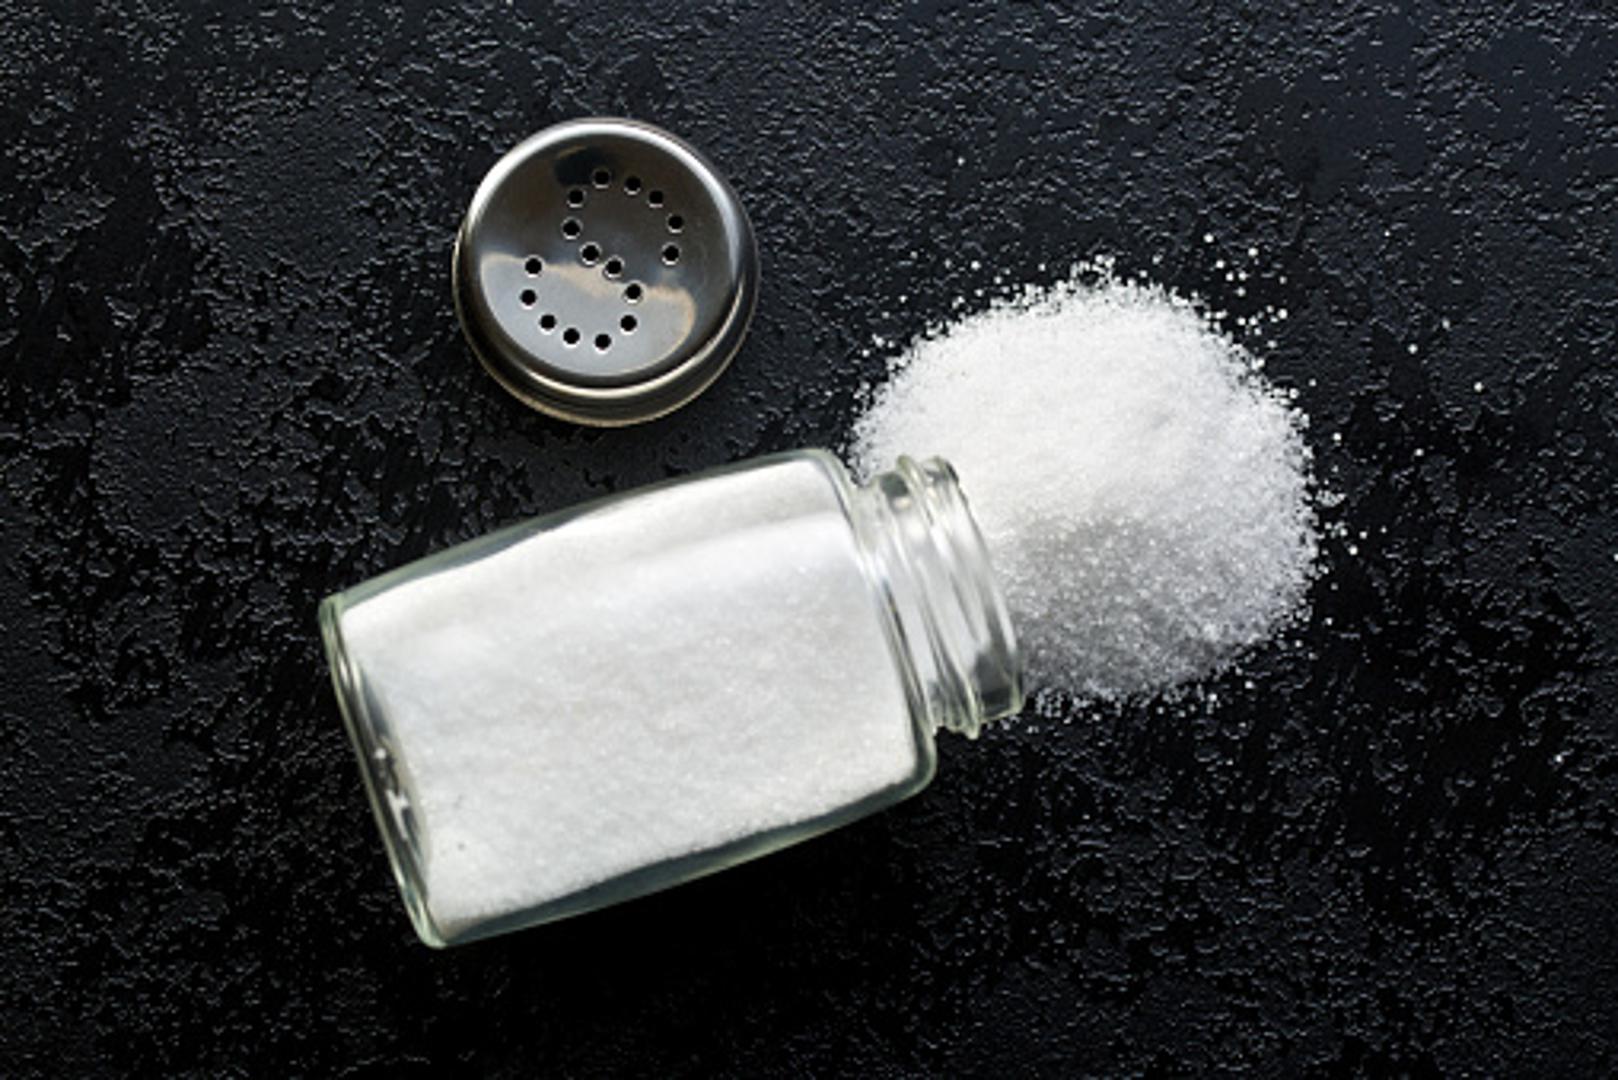 Svjetska zdravstvena organizacija ne preporučuje više od 5 grama soli na dan, što je količina koja stane u jednu čajnu žličicu. 